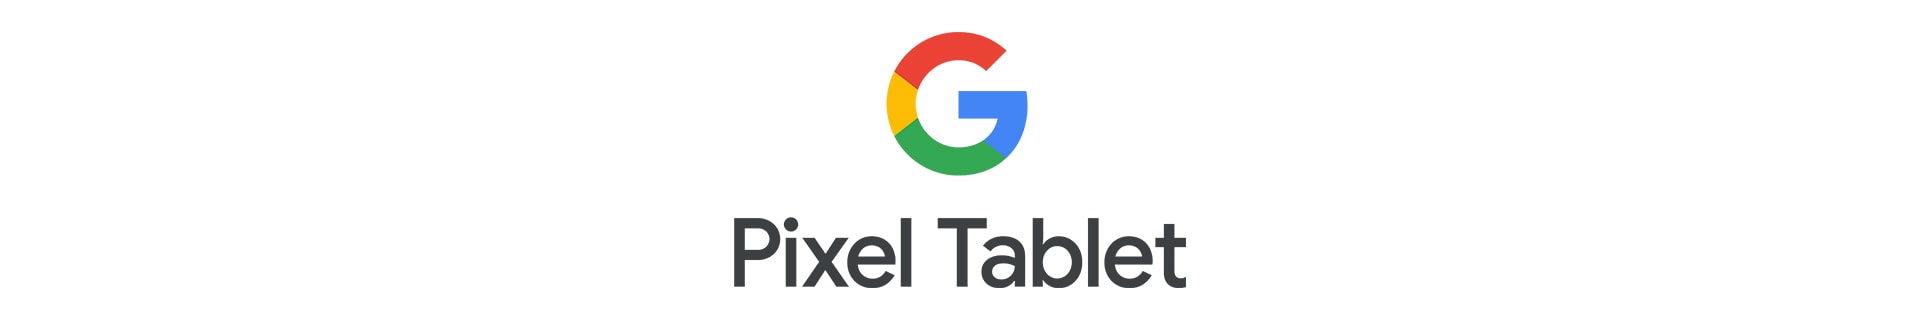 Google Tablet Logo